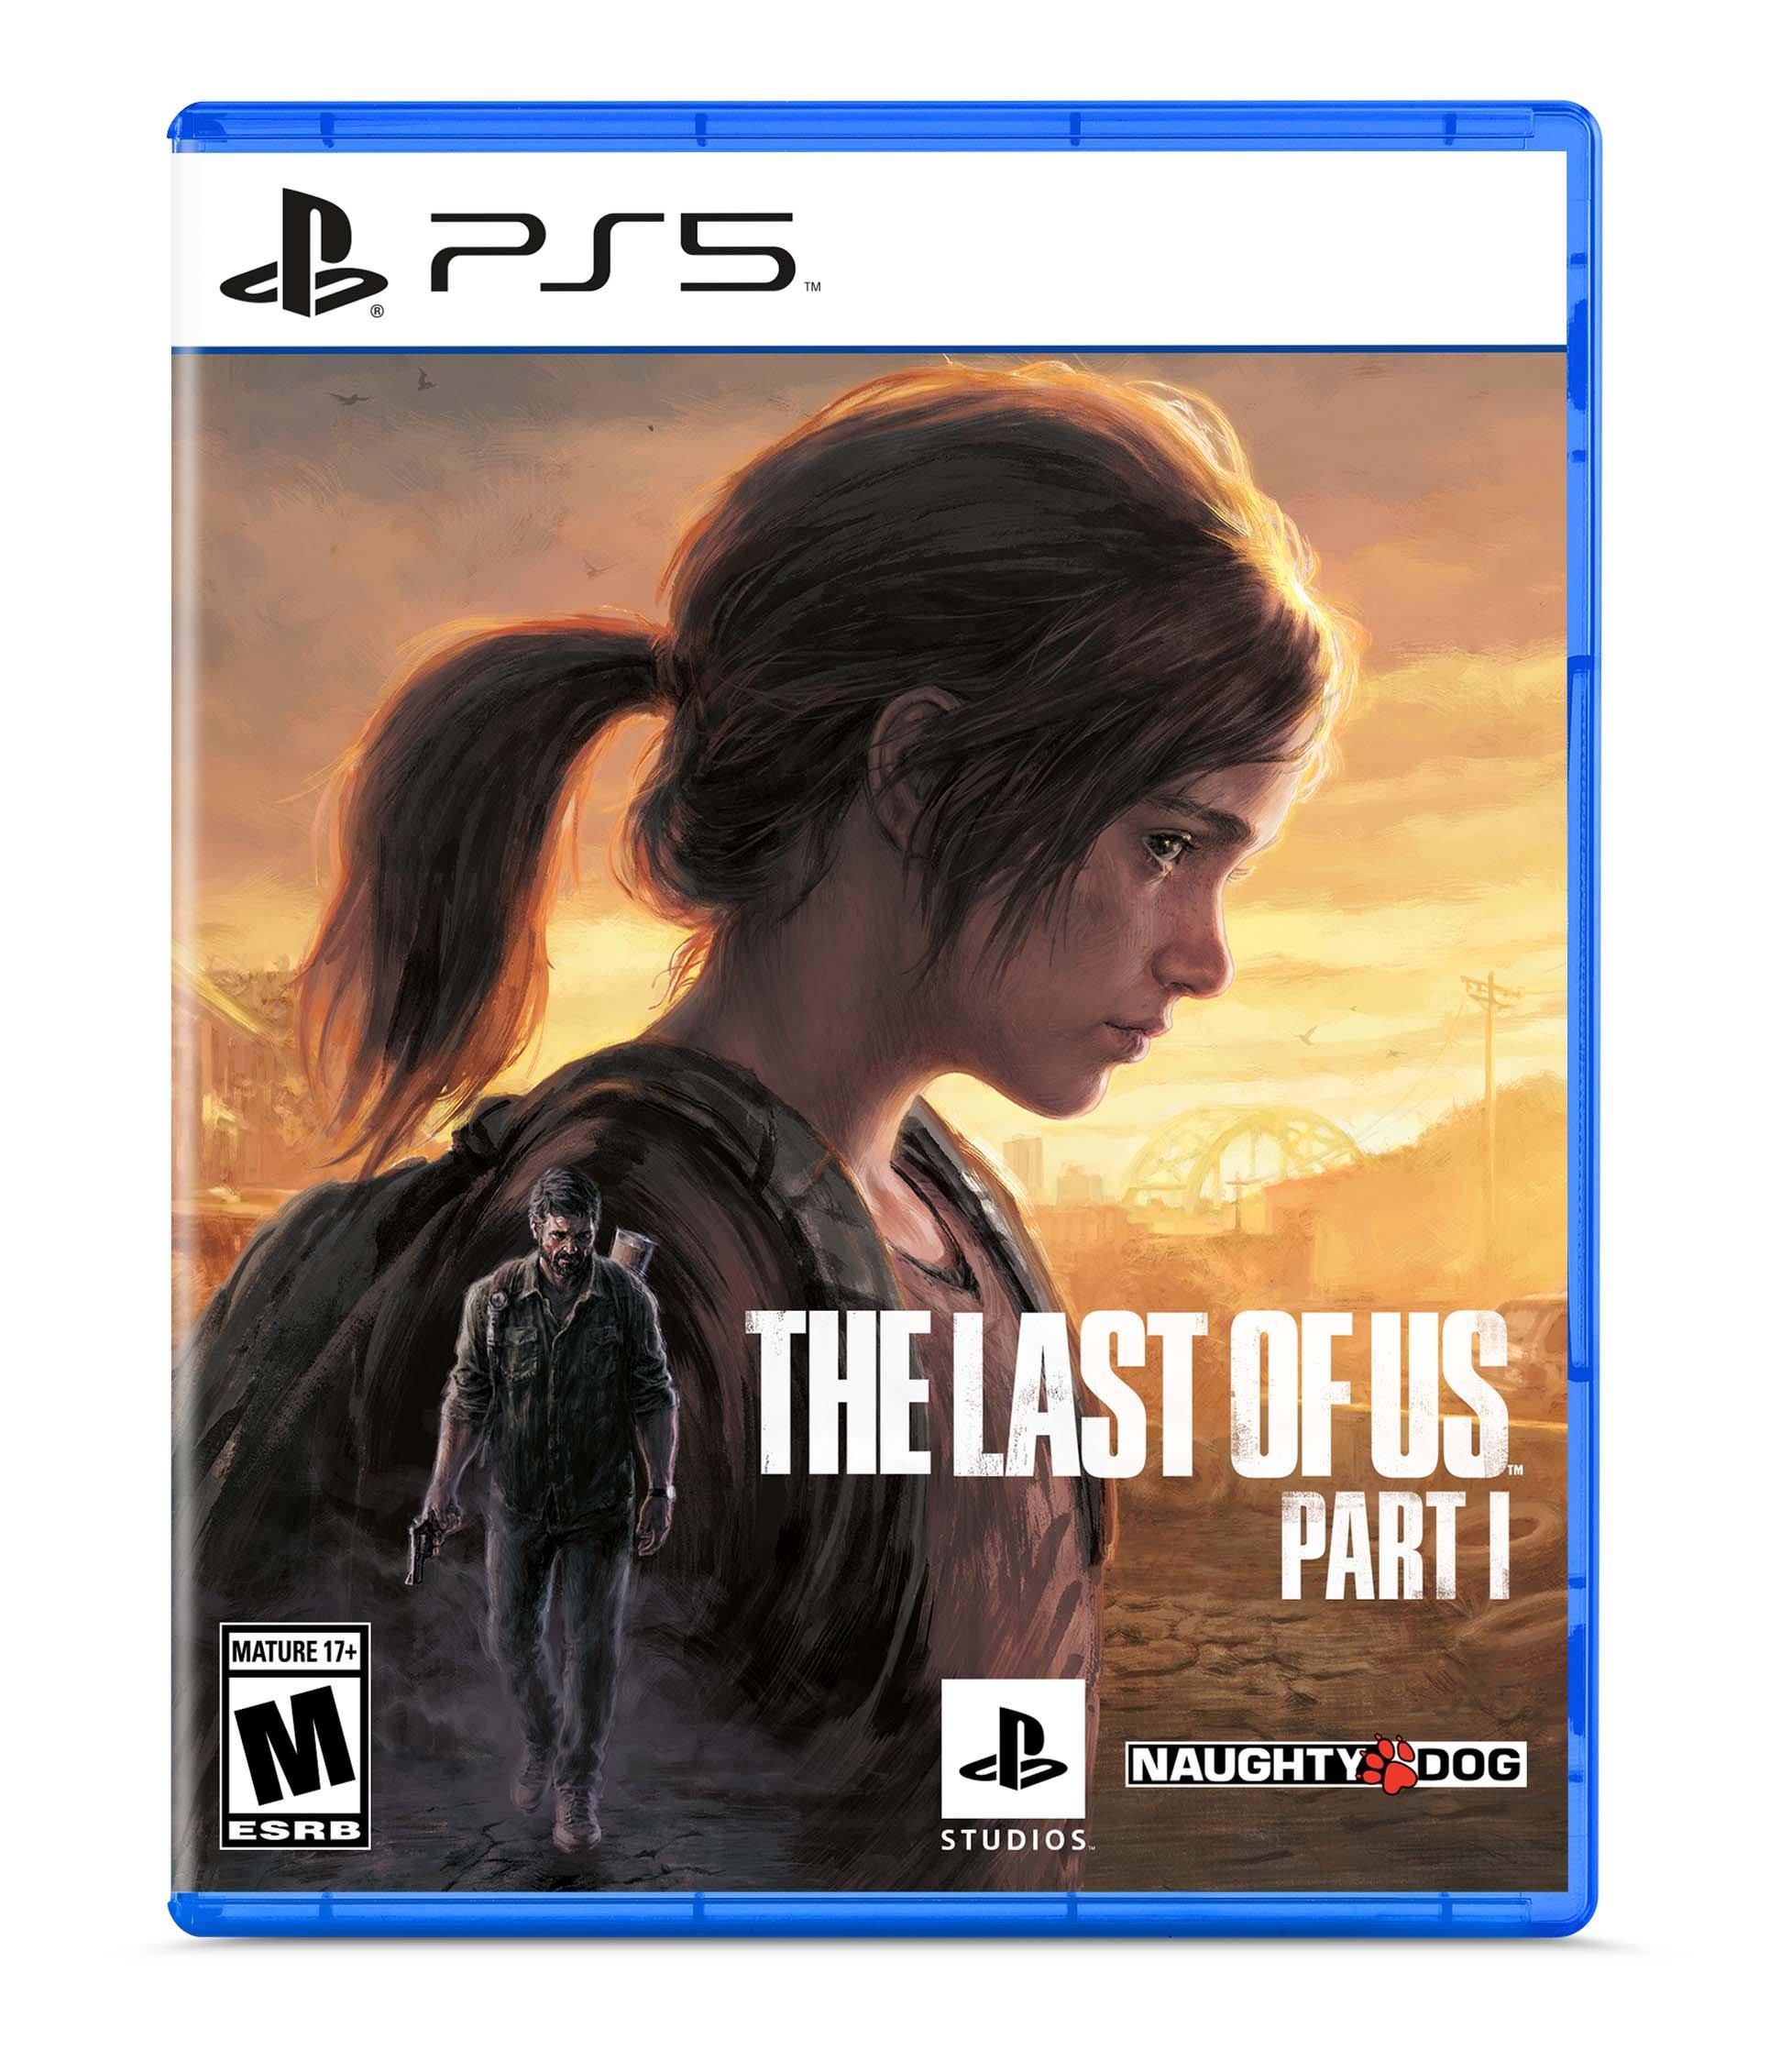 The Last of Us Part II - Ps4 Digital - Edição Padrão - GameShopp